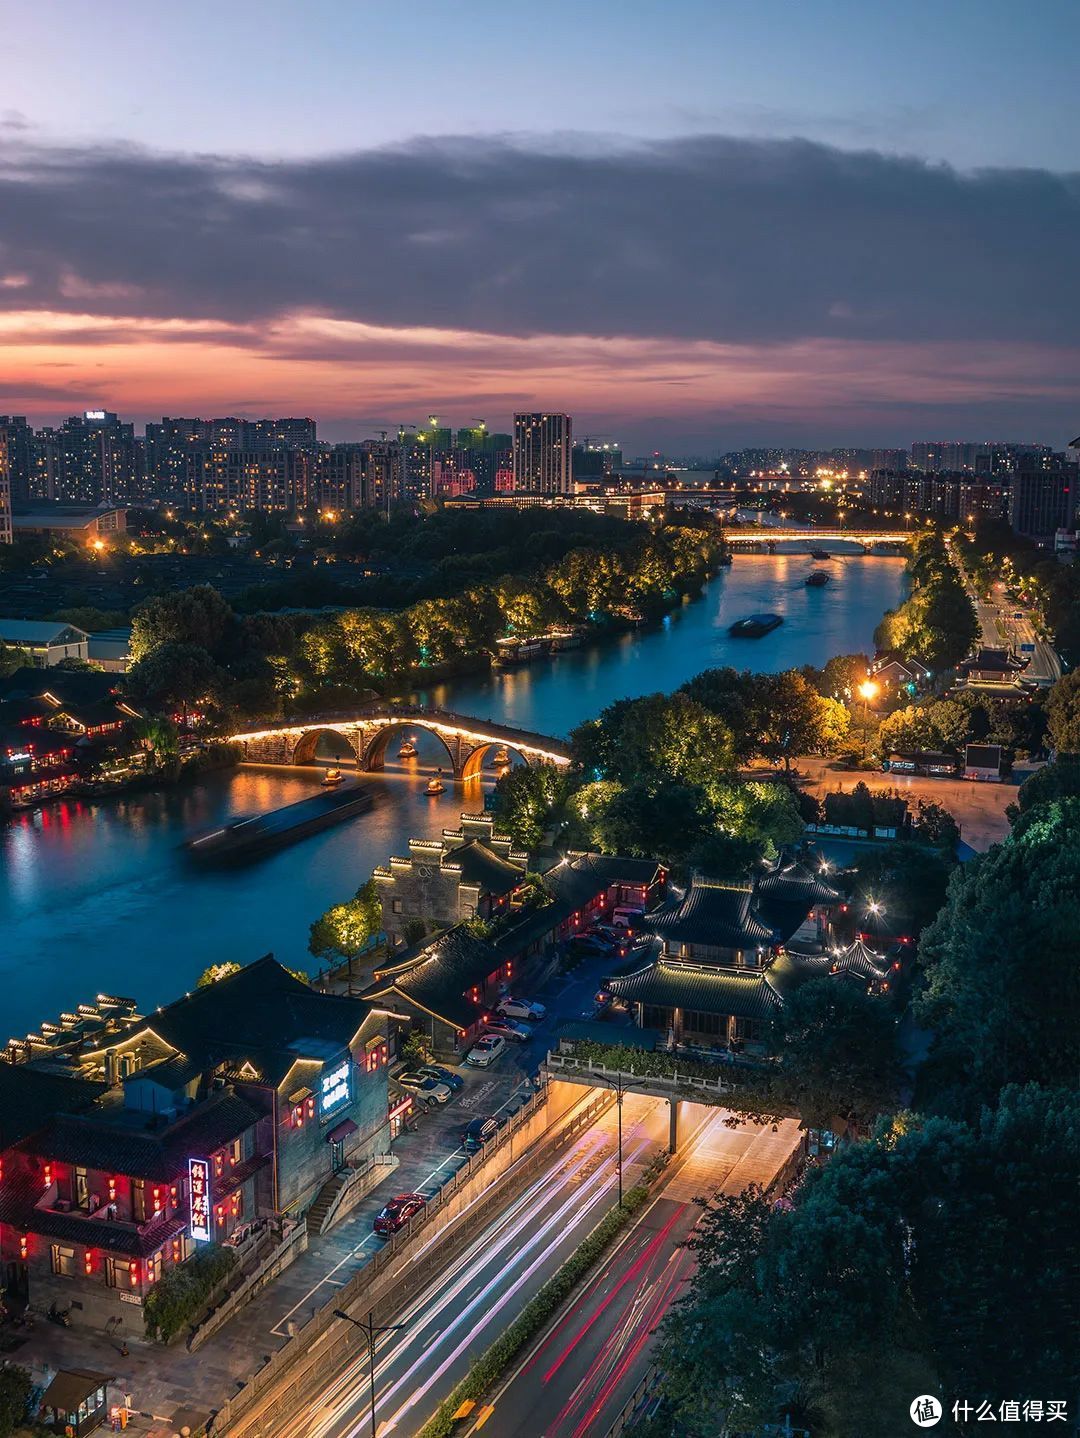 拱宸桥是京杭大运河南端的终点标志，中国京杭大运河博物馆坐落于此。在夜色与流水的装点下，沿岸的古今建筑融为一体。©图虫创意